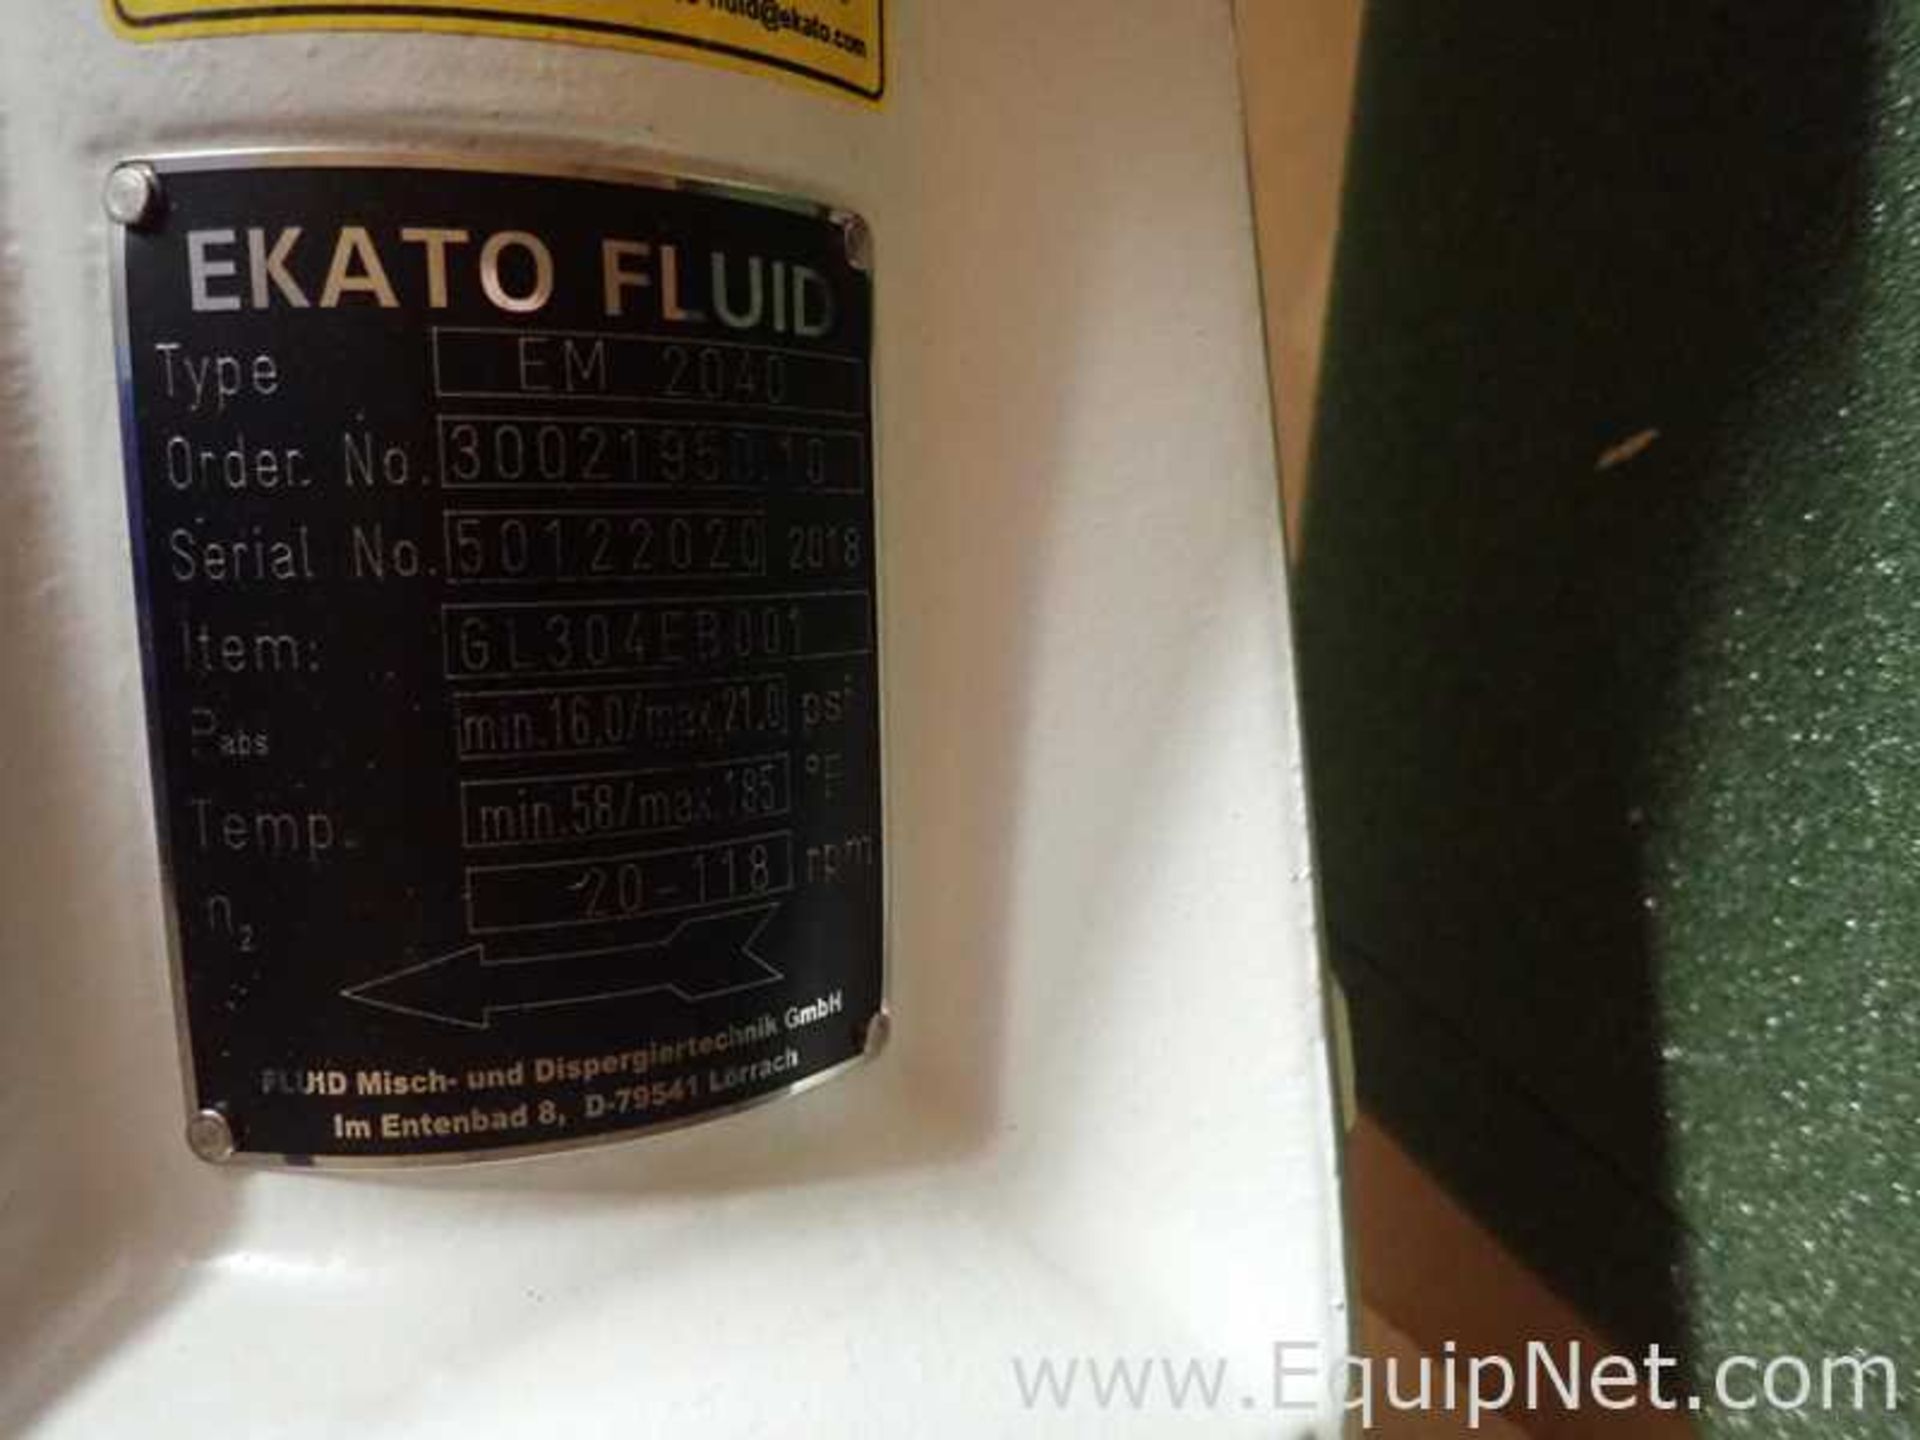 Unused Ekato Fluid EM 2040 Industrial Agitator with Dual Blade Shaft - Image 7 of 7